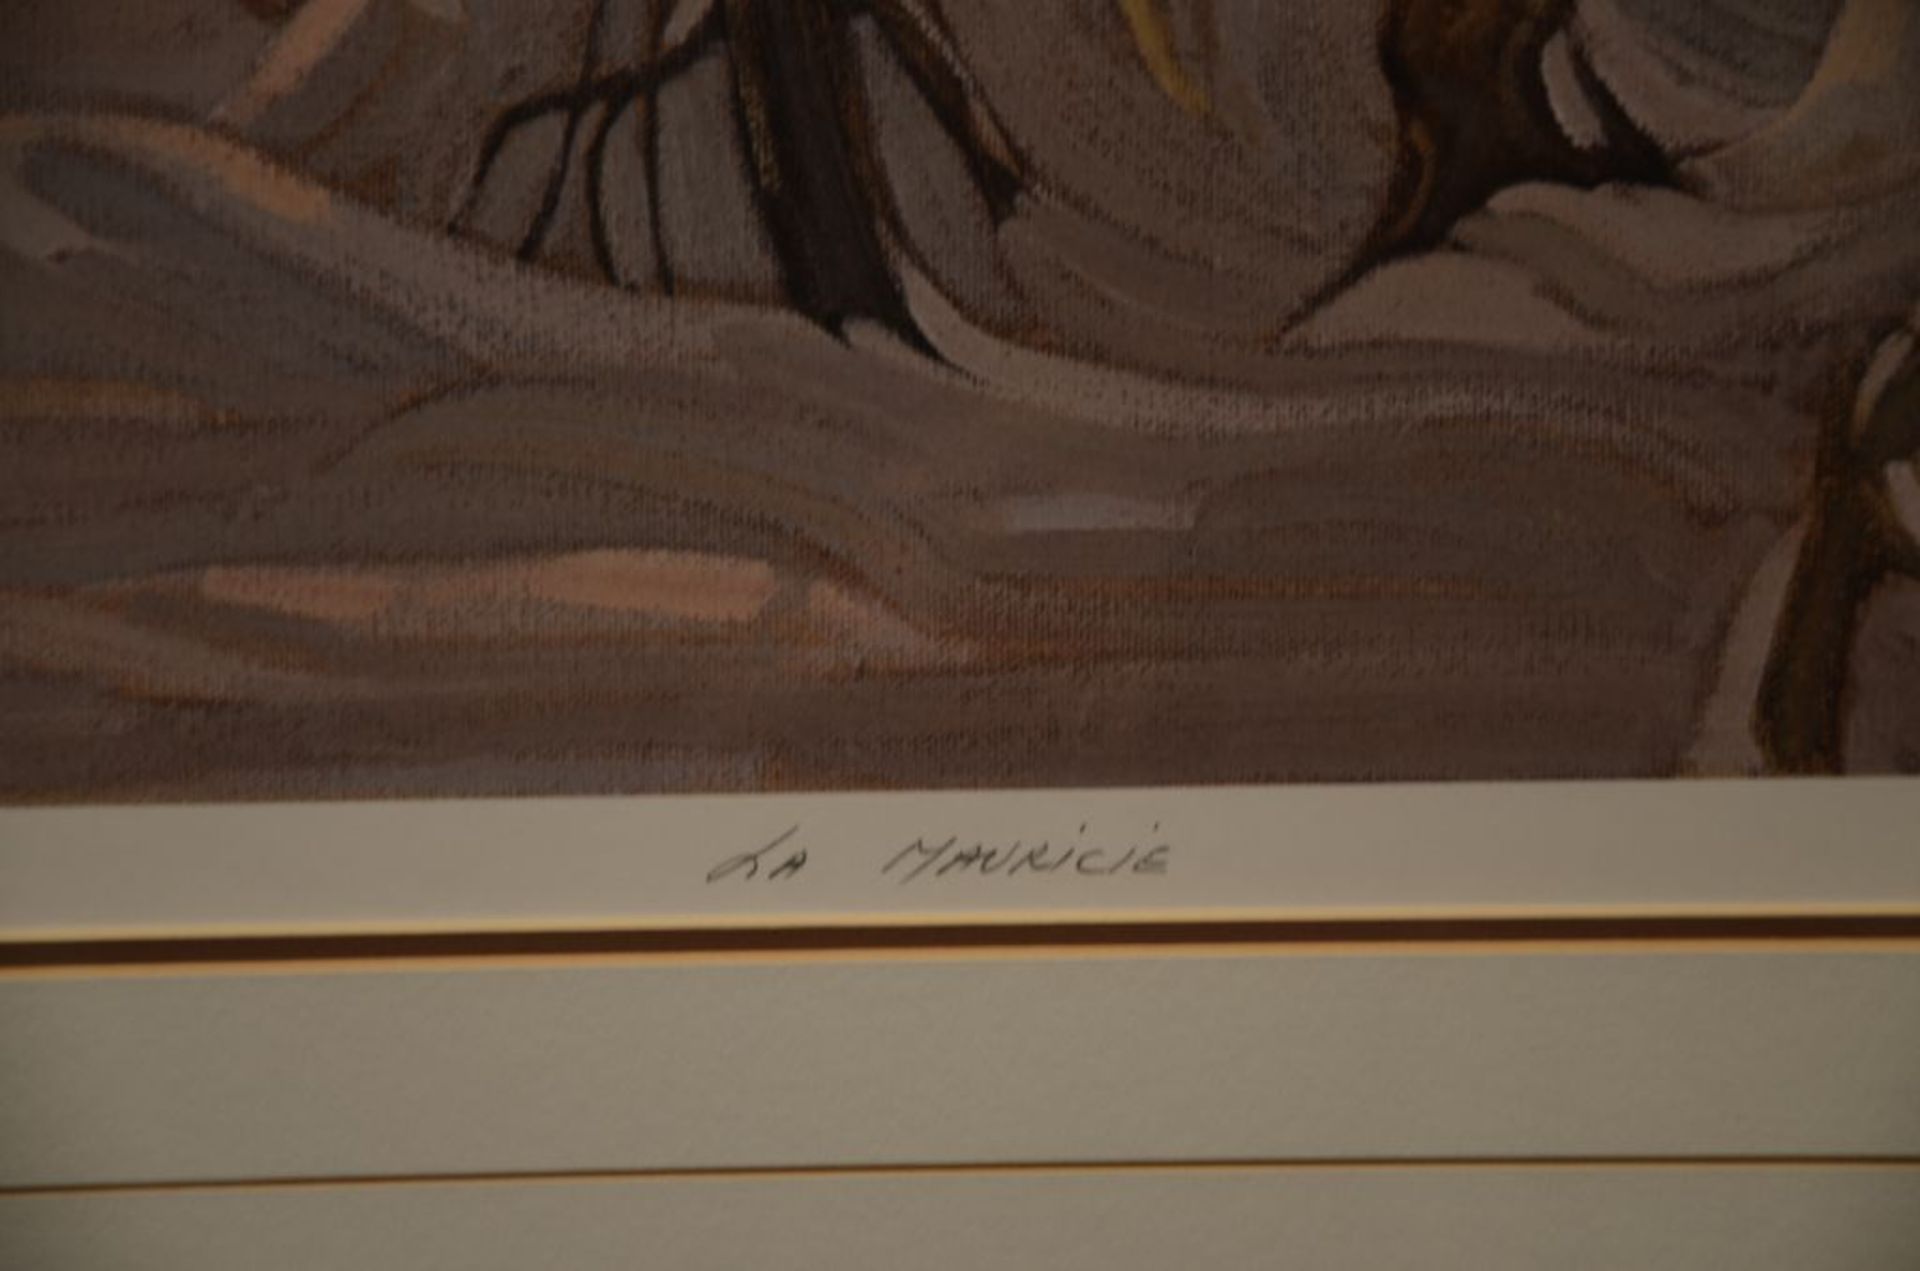 Sérigraphie signée "La Mauricie". 73/480. Encadrée. 32"x27" - Image 3 of 4